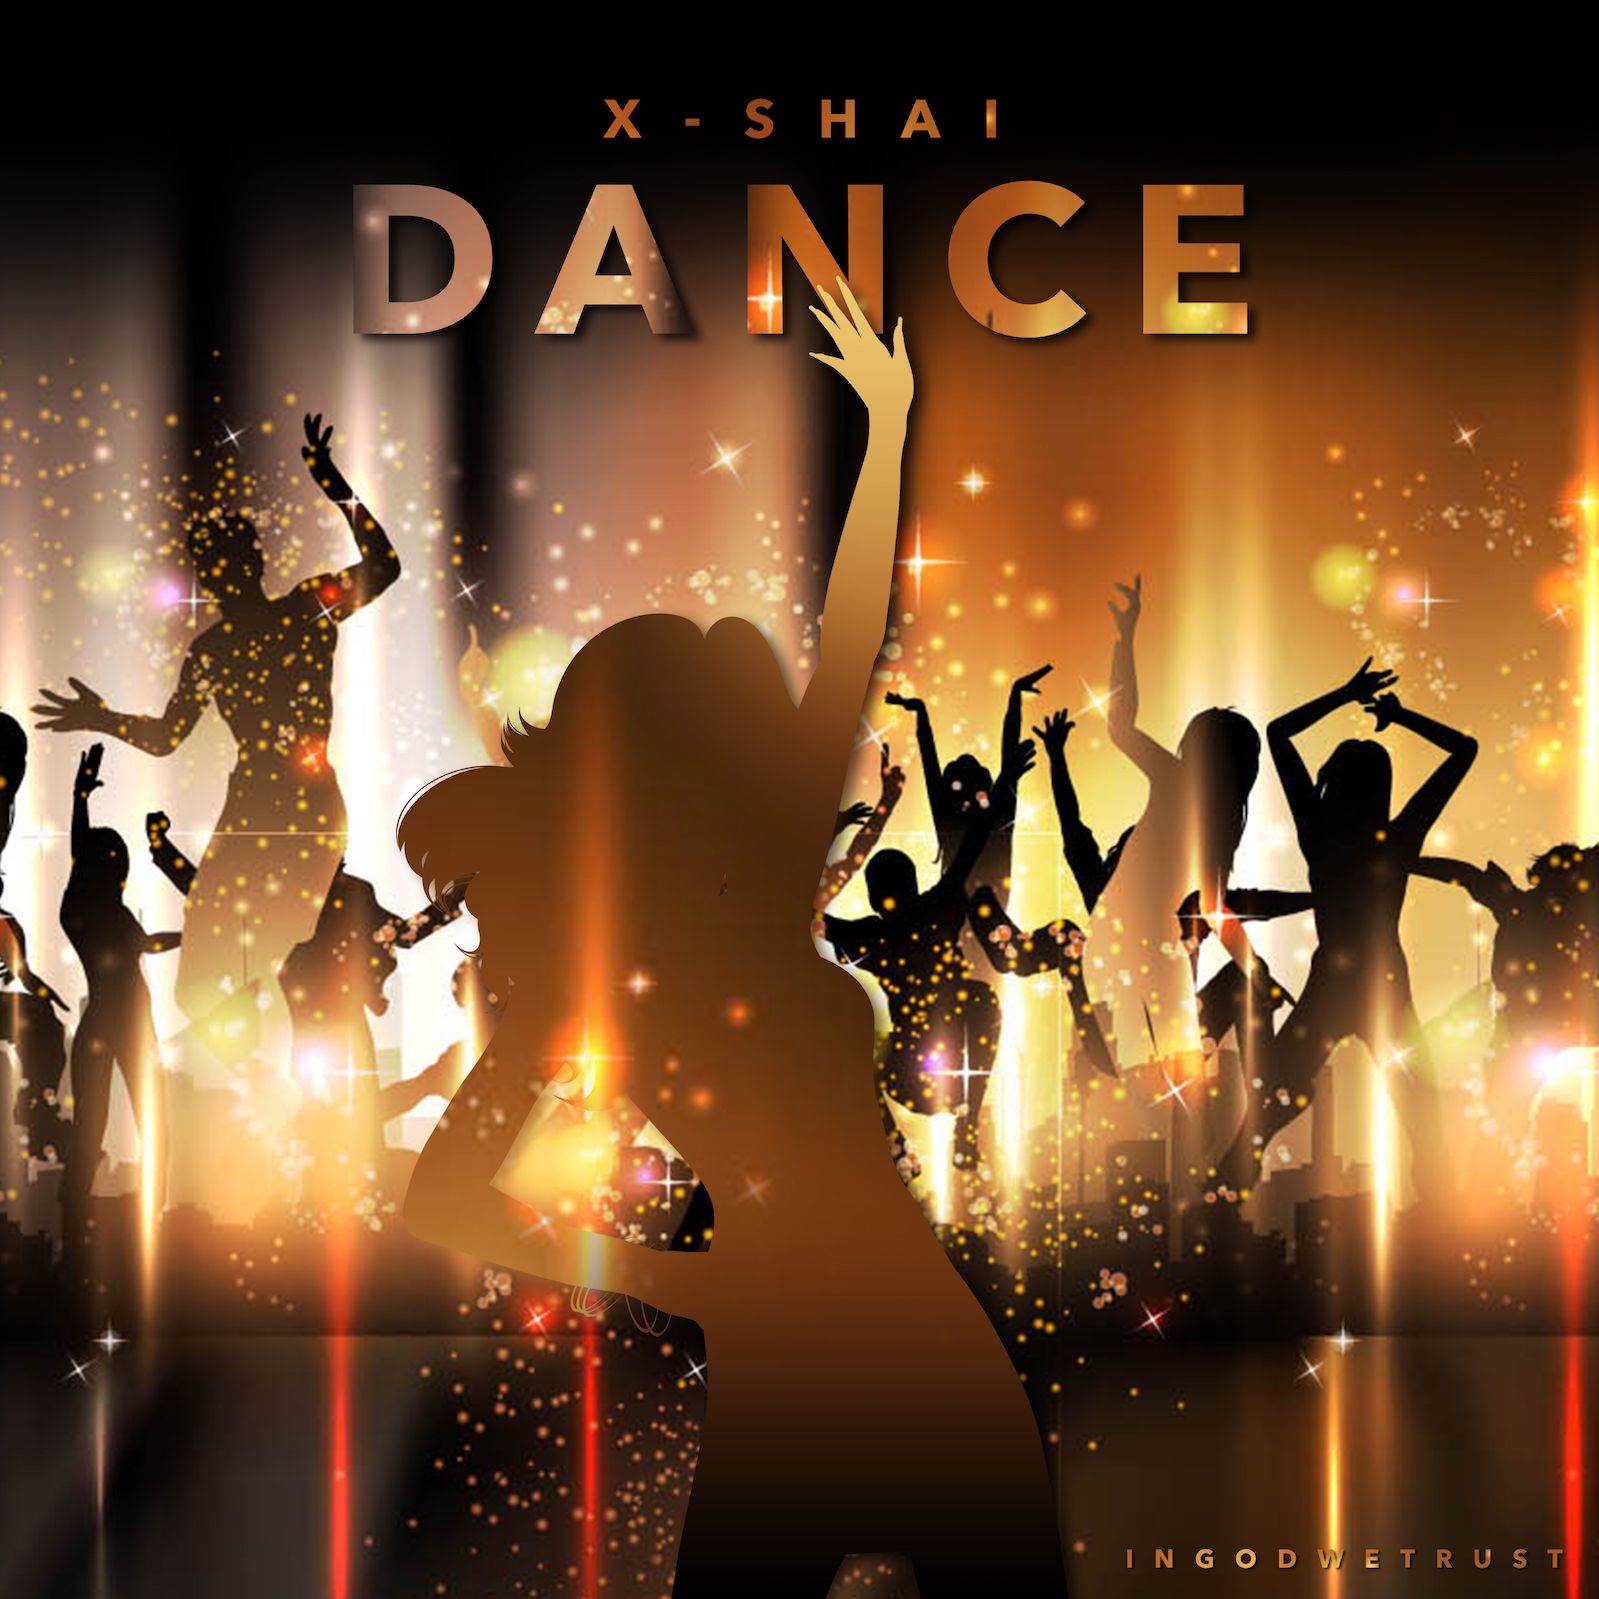 Музыка танцы музыка давайте. Танцы обложка. Обложка танцевальной группы. Танцевальная музыка обложка. Обложка для танцевального альбома.